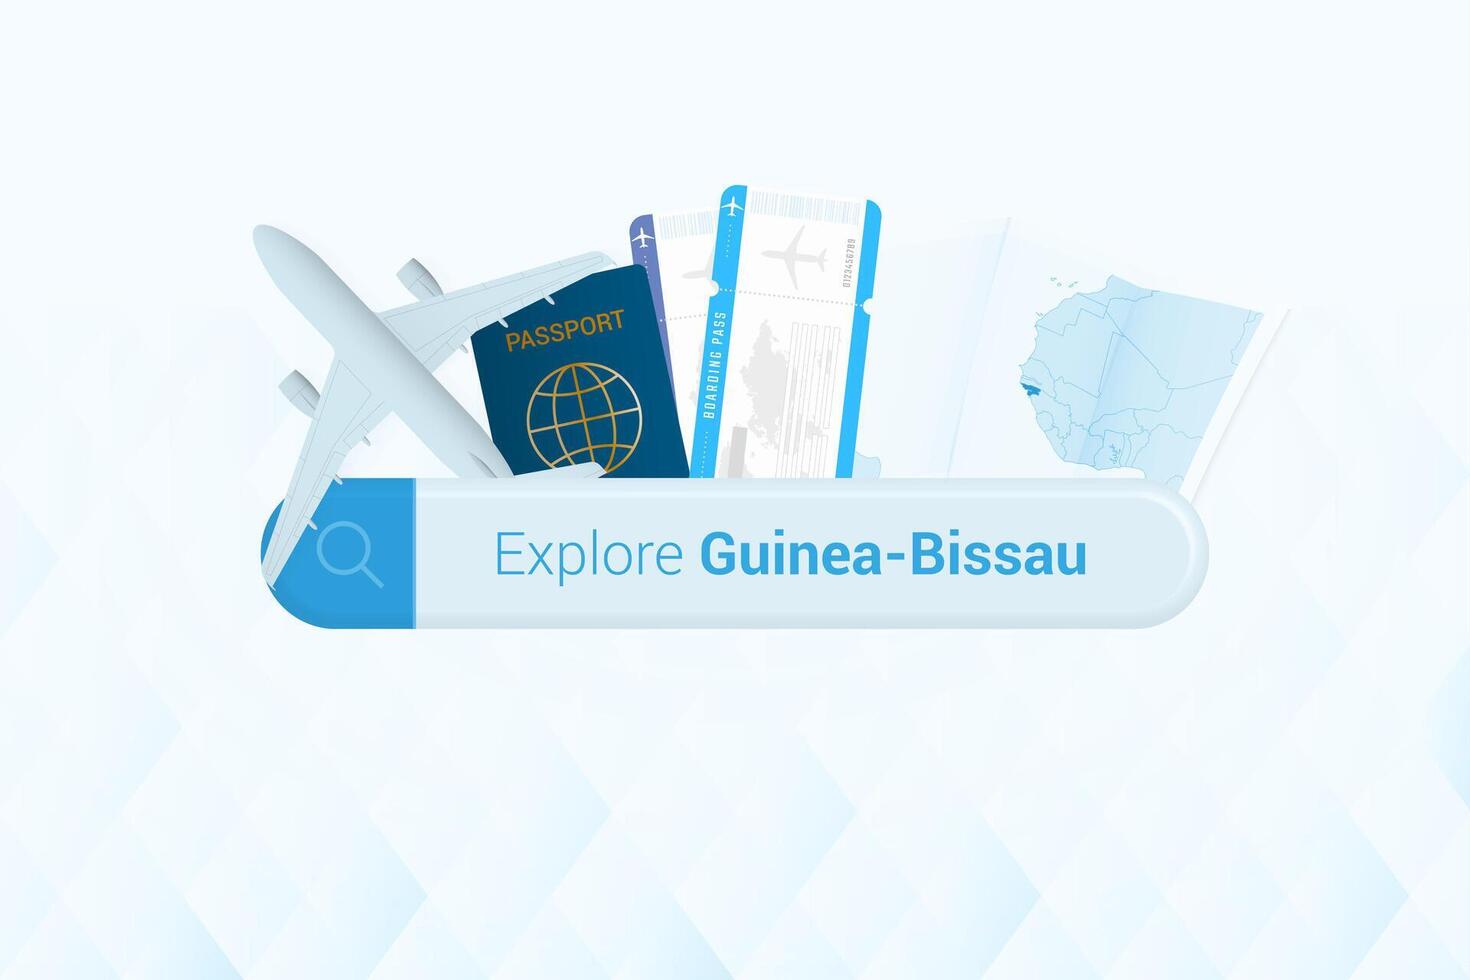 recherche des billets à guinée-bissau ou Voyage destination dans guinée-bissau. recherche bar avec avion, passeport, embarquement passer, des billets et carte. vecteur